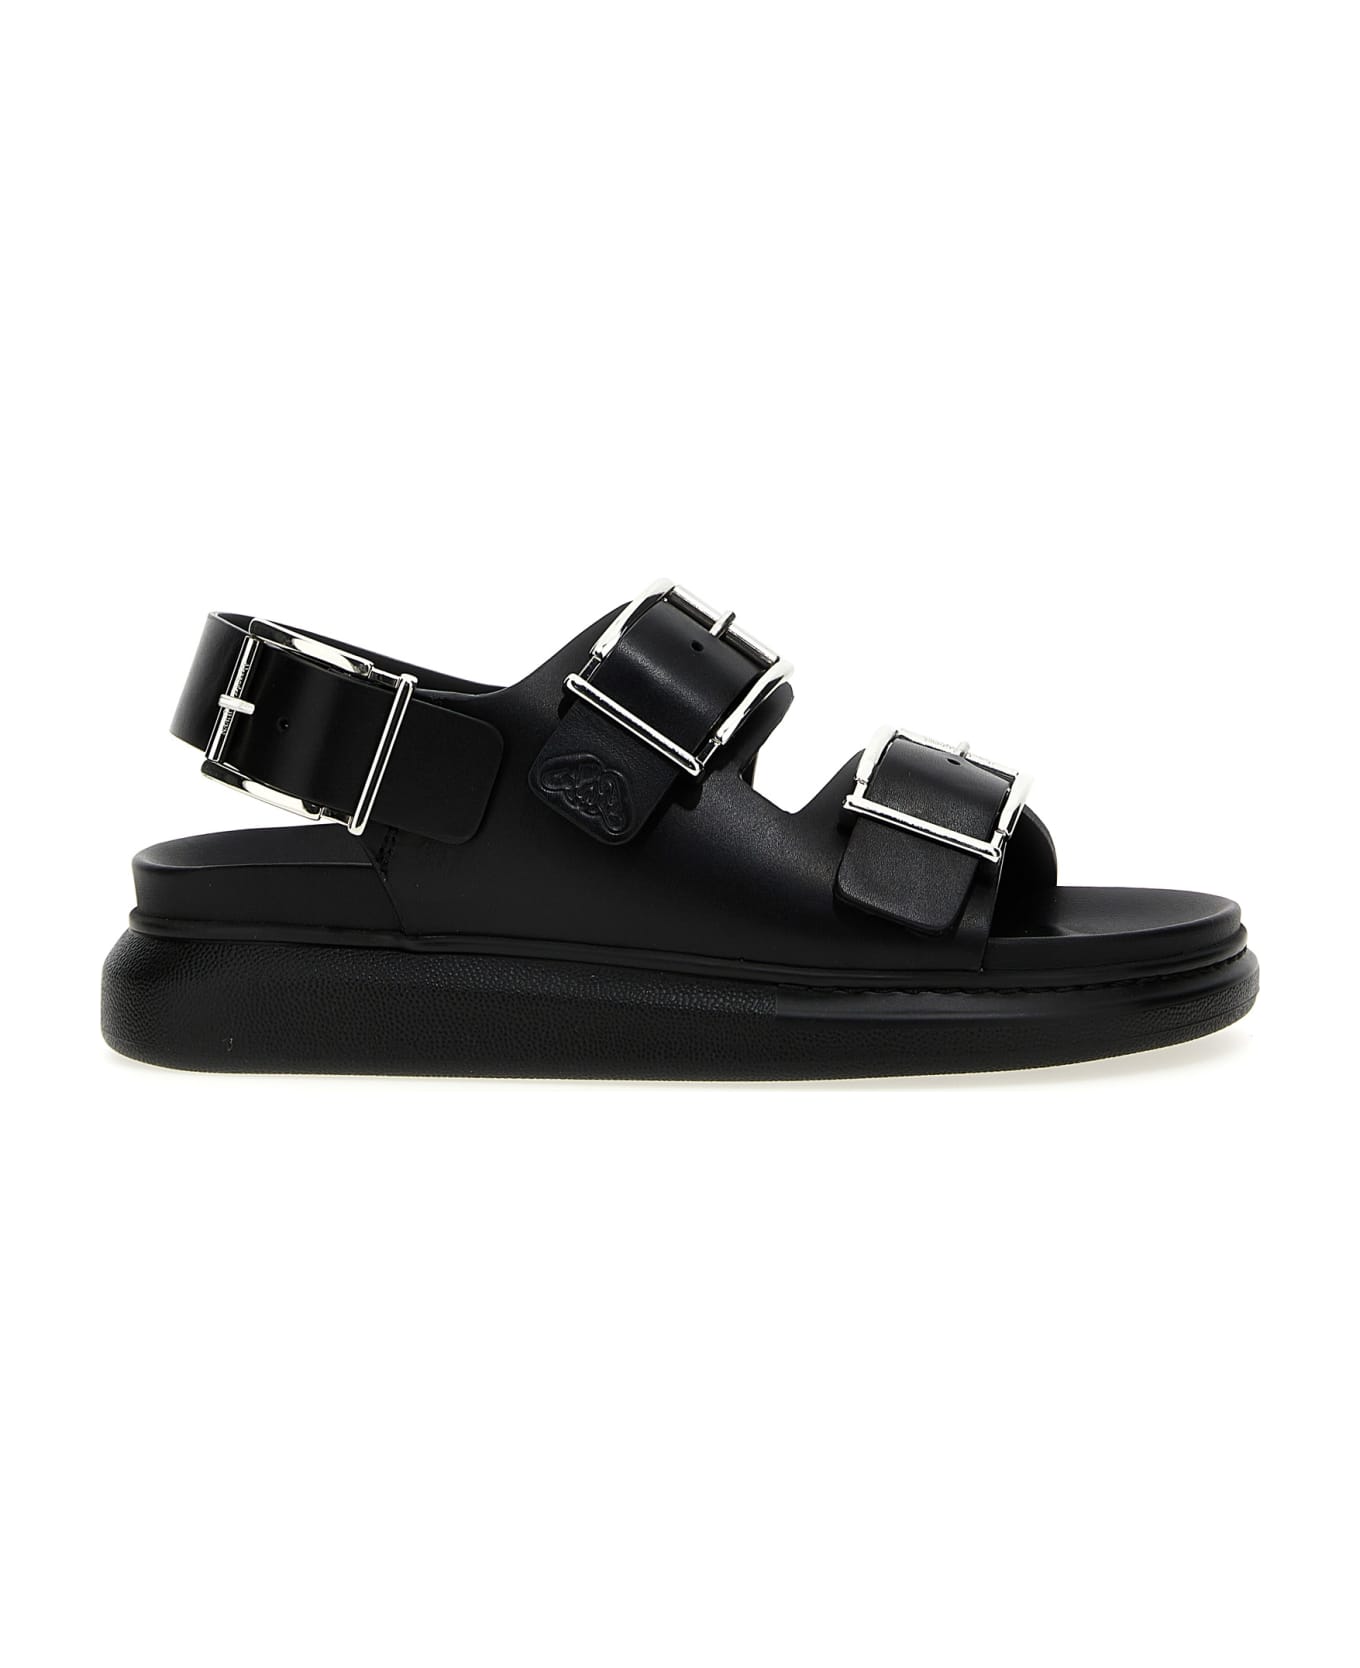 Alexander McQueen Buckle Leather Sandals - Black  